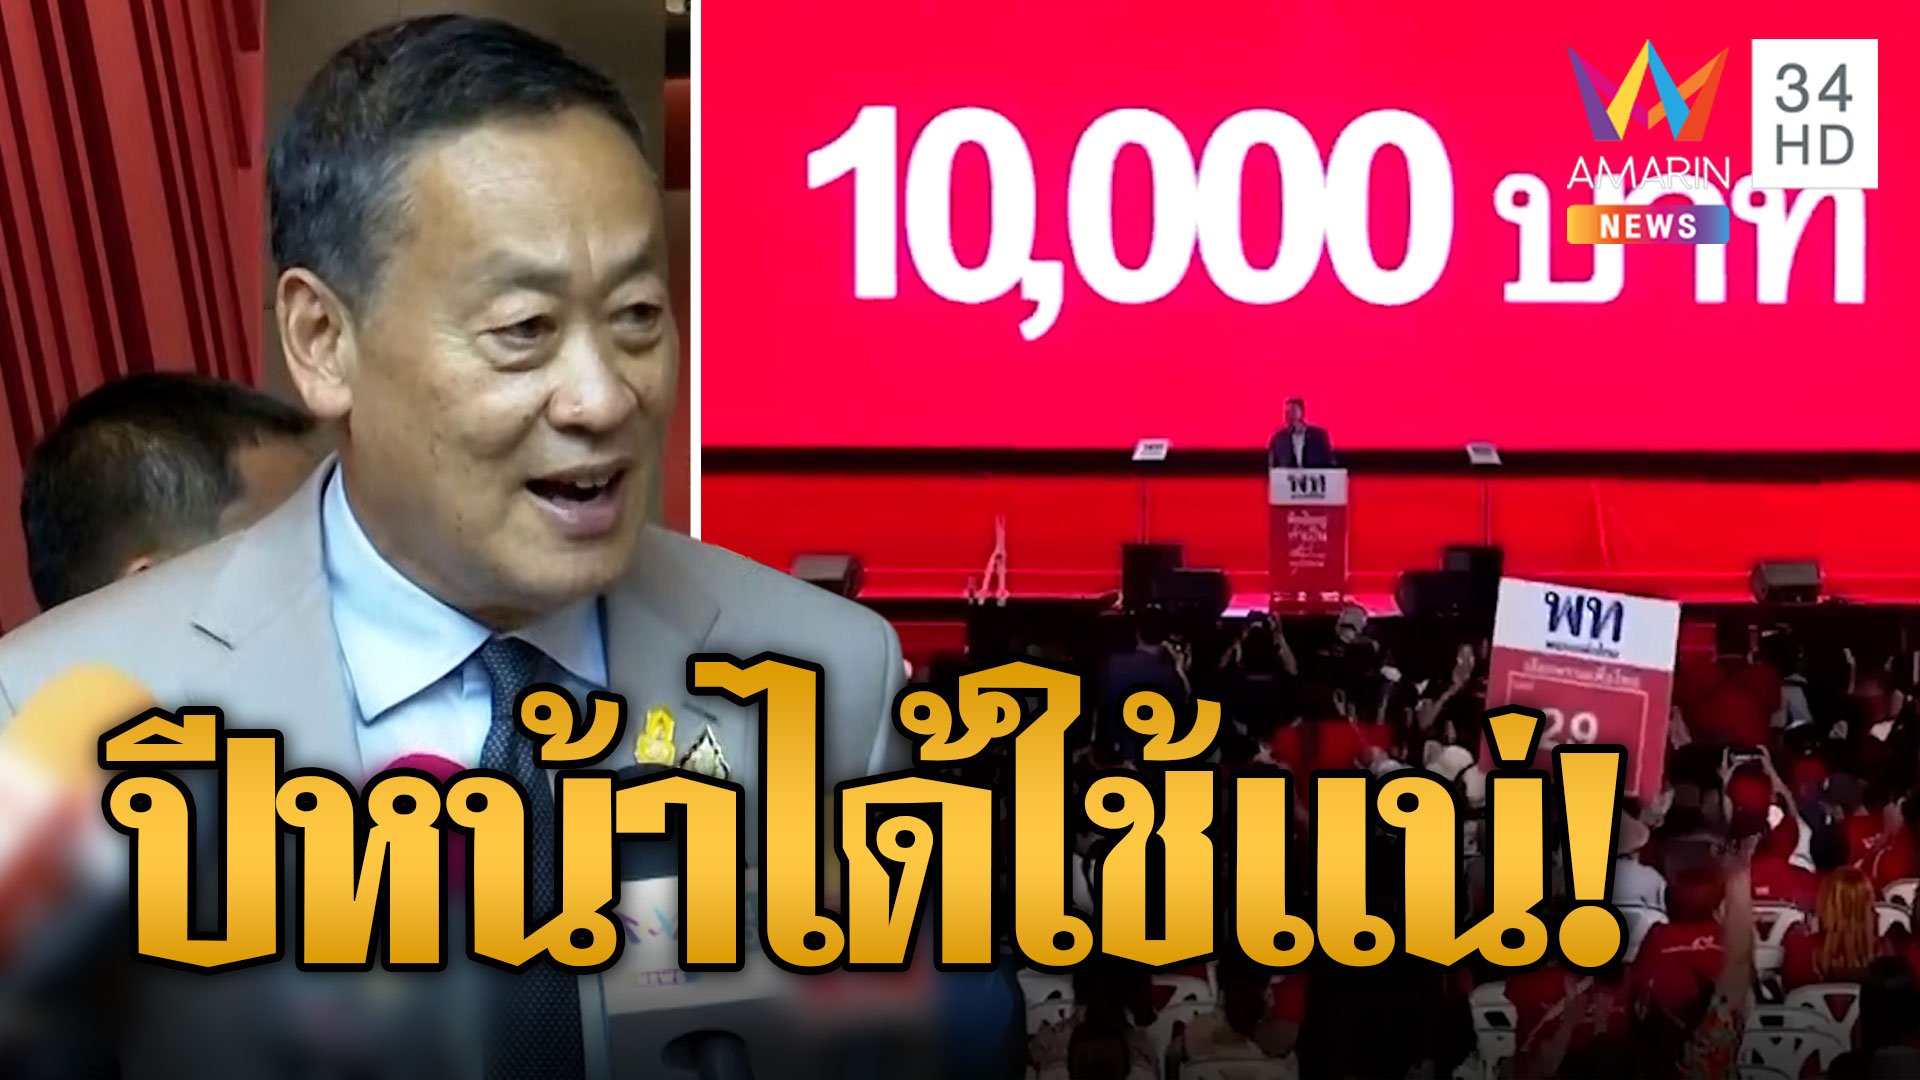 "เศรษฐา" เดินหน้าลุยเงินดิจิตอล 10,000 โวได้ใช้แน่ต้นปี 67 กระตุ้นเศรษกิจไทย | ข่าวอรุณอมรินทร์ | 30 ส.ค. 66 | AMARIN TVHD34